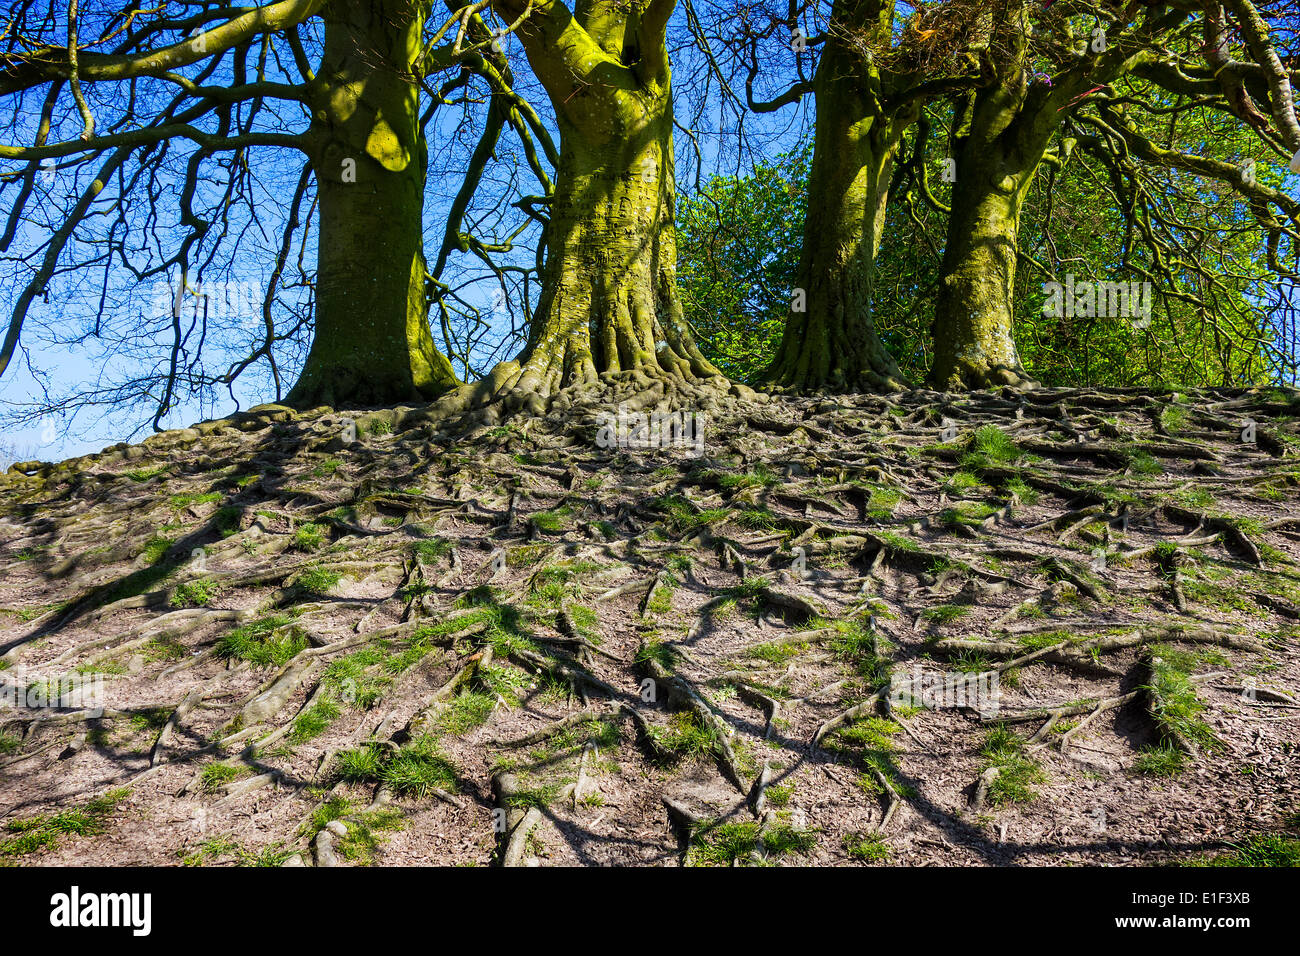 Exposés des racines des arbres causée par l'érosion des sols. Banque D'Images